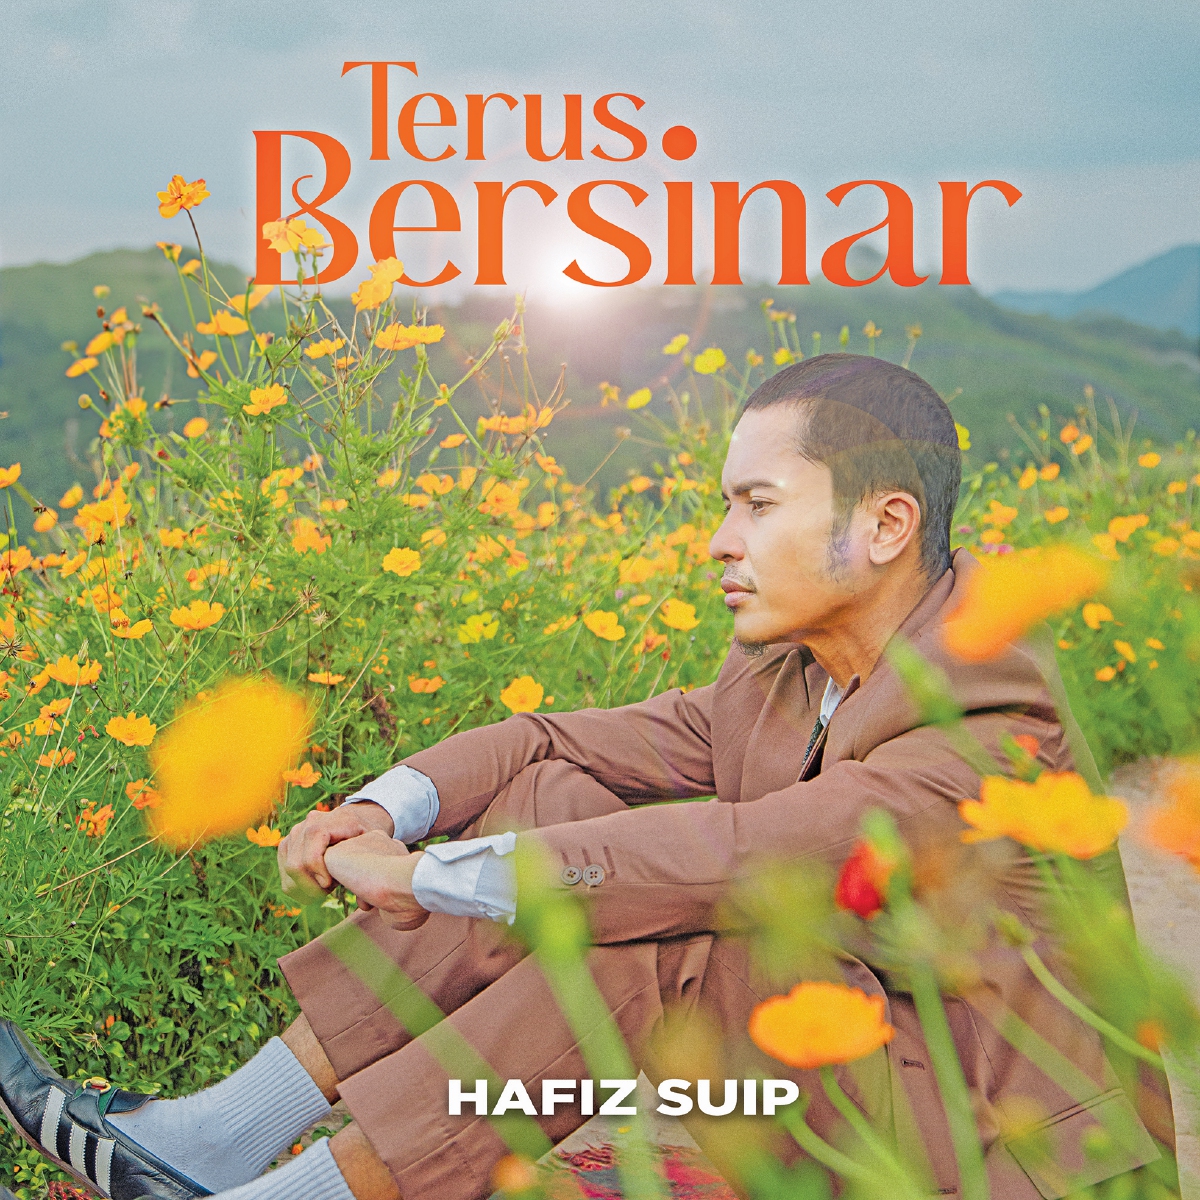 TERUS Bersinar lagu single terbaru Hafiz.